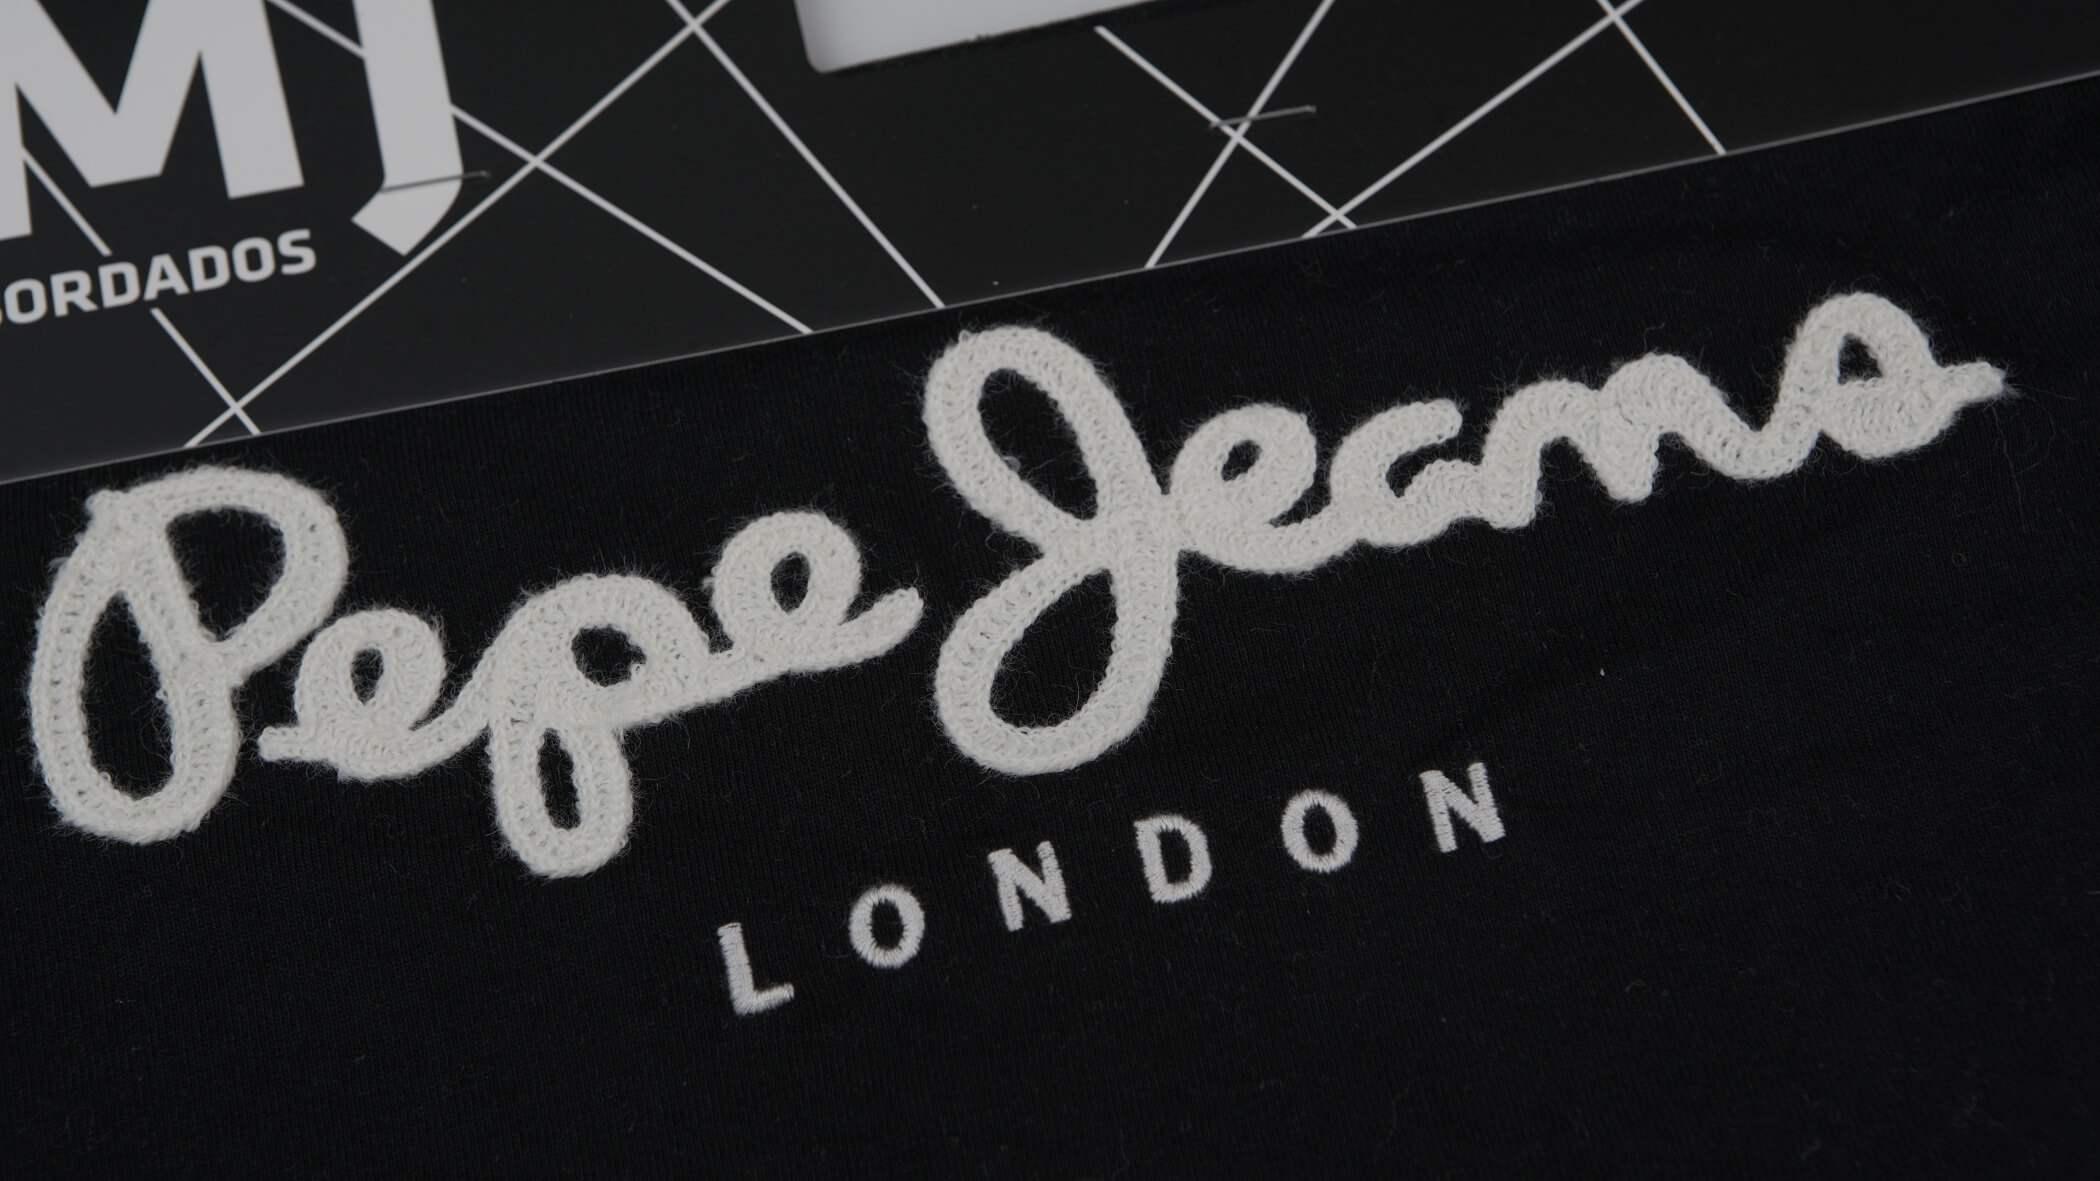 Bordado de ponto cadeia - Cornely desenvolvida pela Bordados Oliveira para a marca Pepe Jeans London